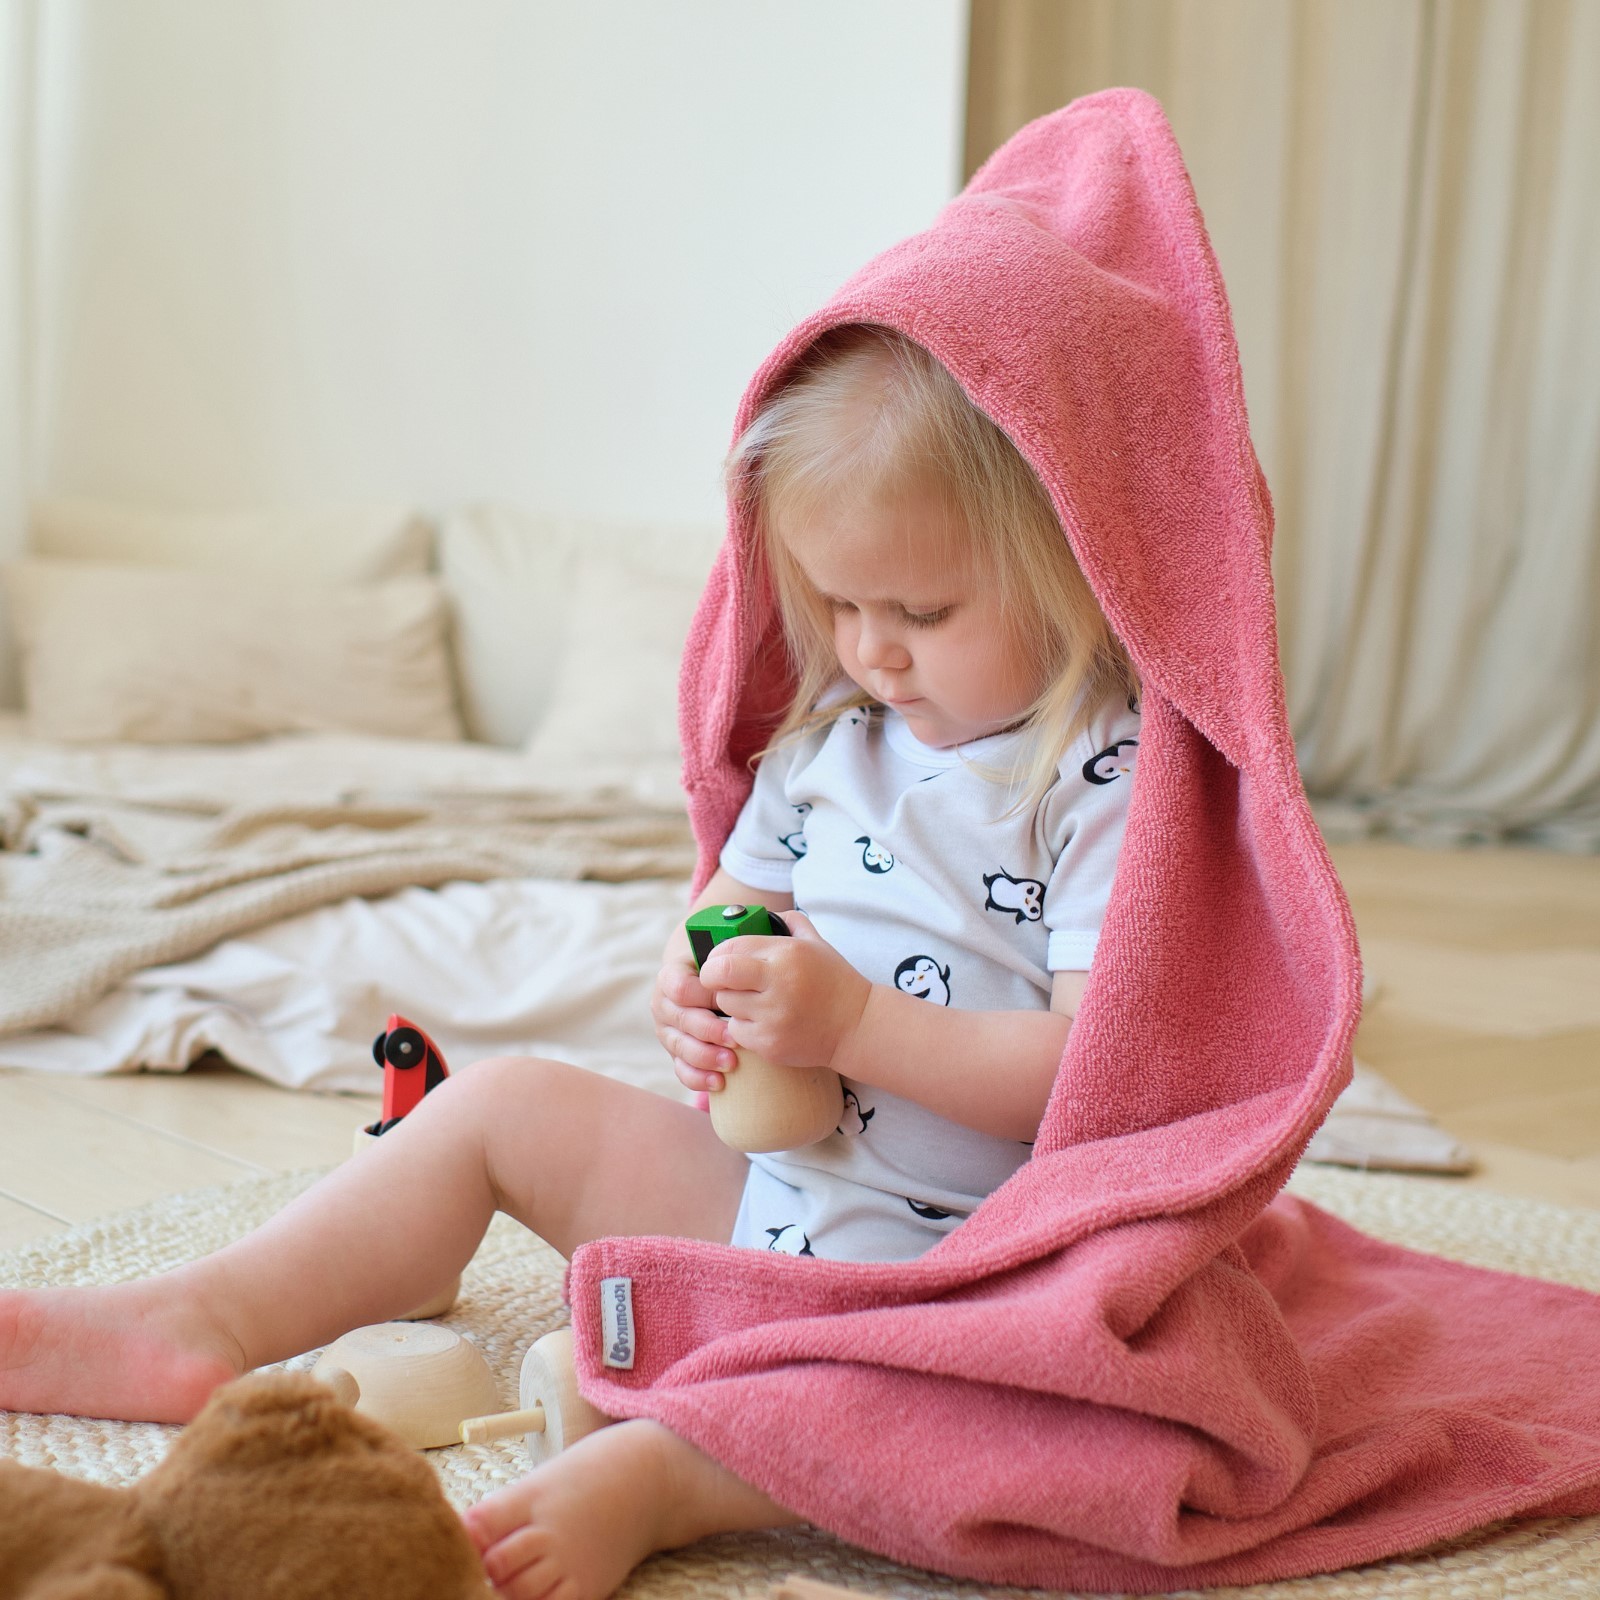 Детское полотенце Sherri цвет: пепельно-розовый (85х85 см), размер 85х85 см ros910595 Детское полотенце Sherri цвет: пепельно-розовый (85х85 см) - фото 1